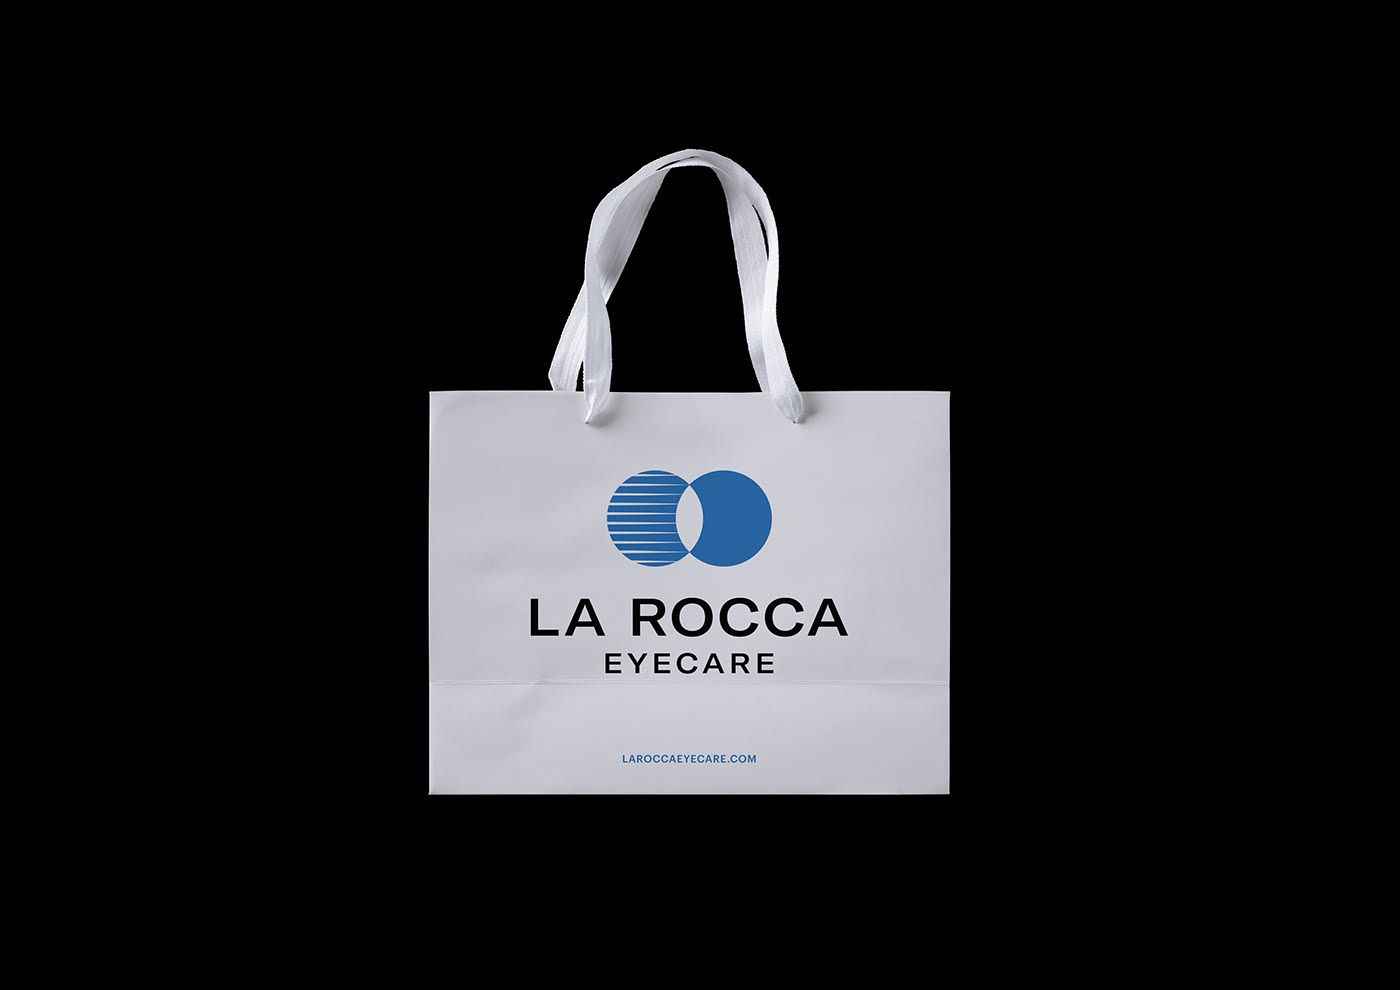 La Rocca 品牌形象设计